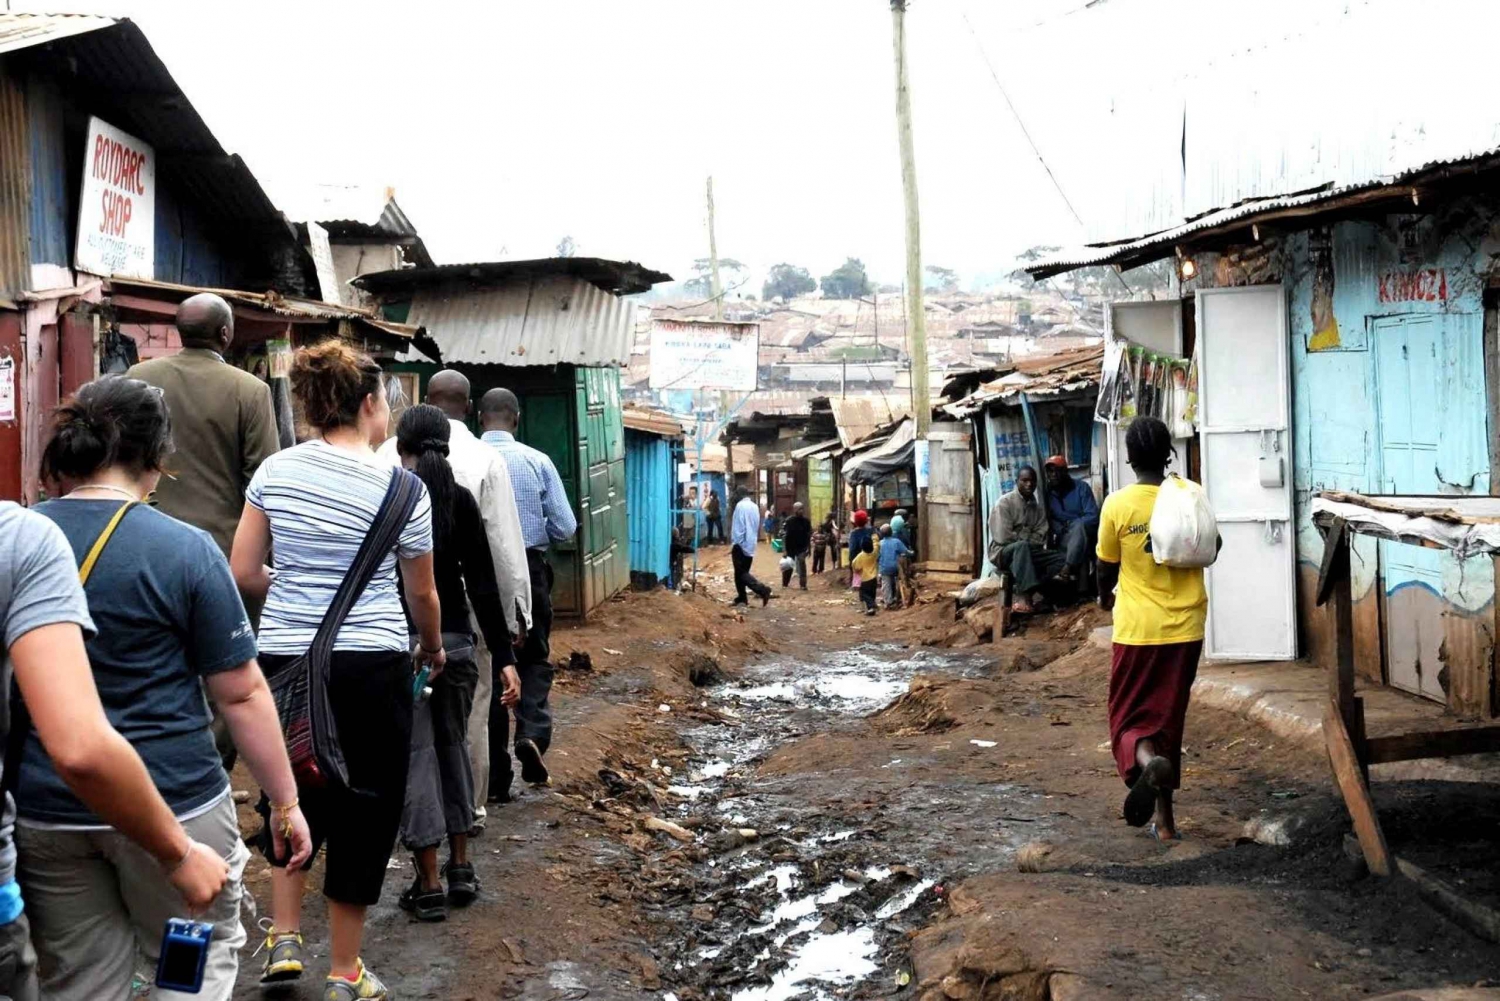 Dagtocht door de sloppenwijken van Kibera in Kenia.